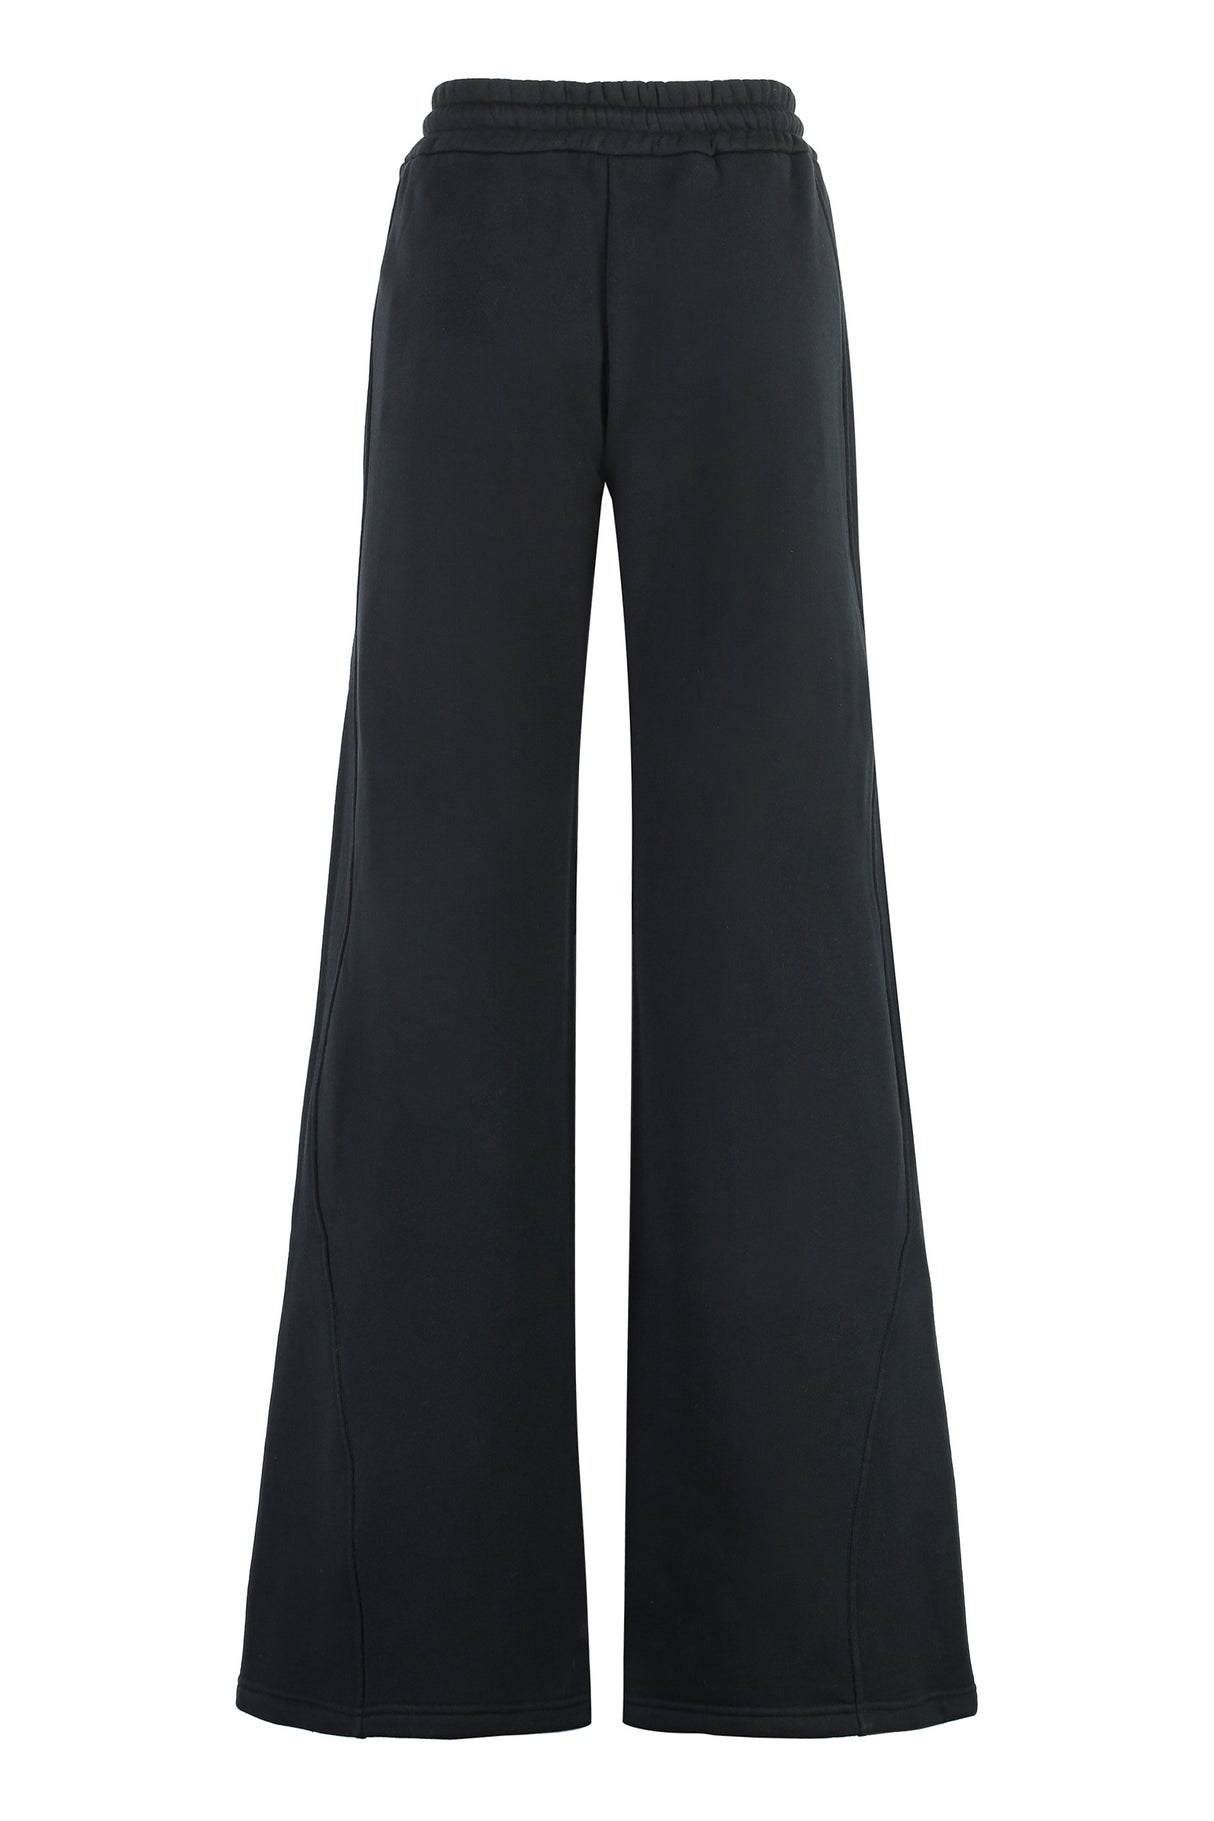 黒コットンの女性用調整可能なドローコード付きズボン